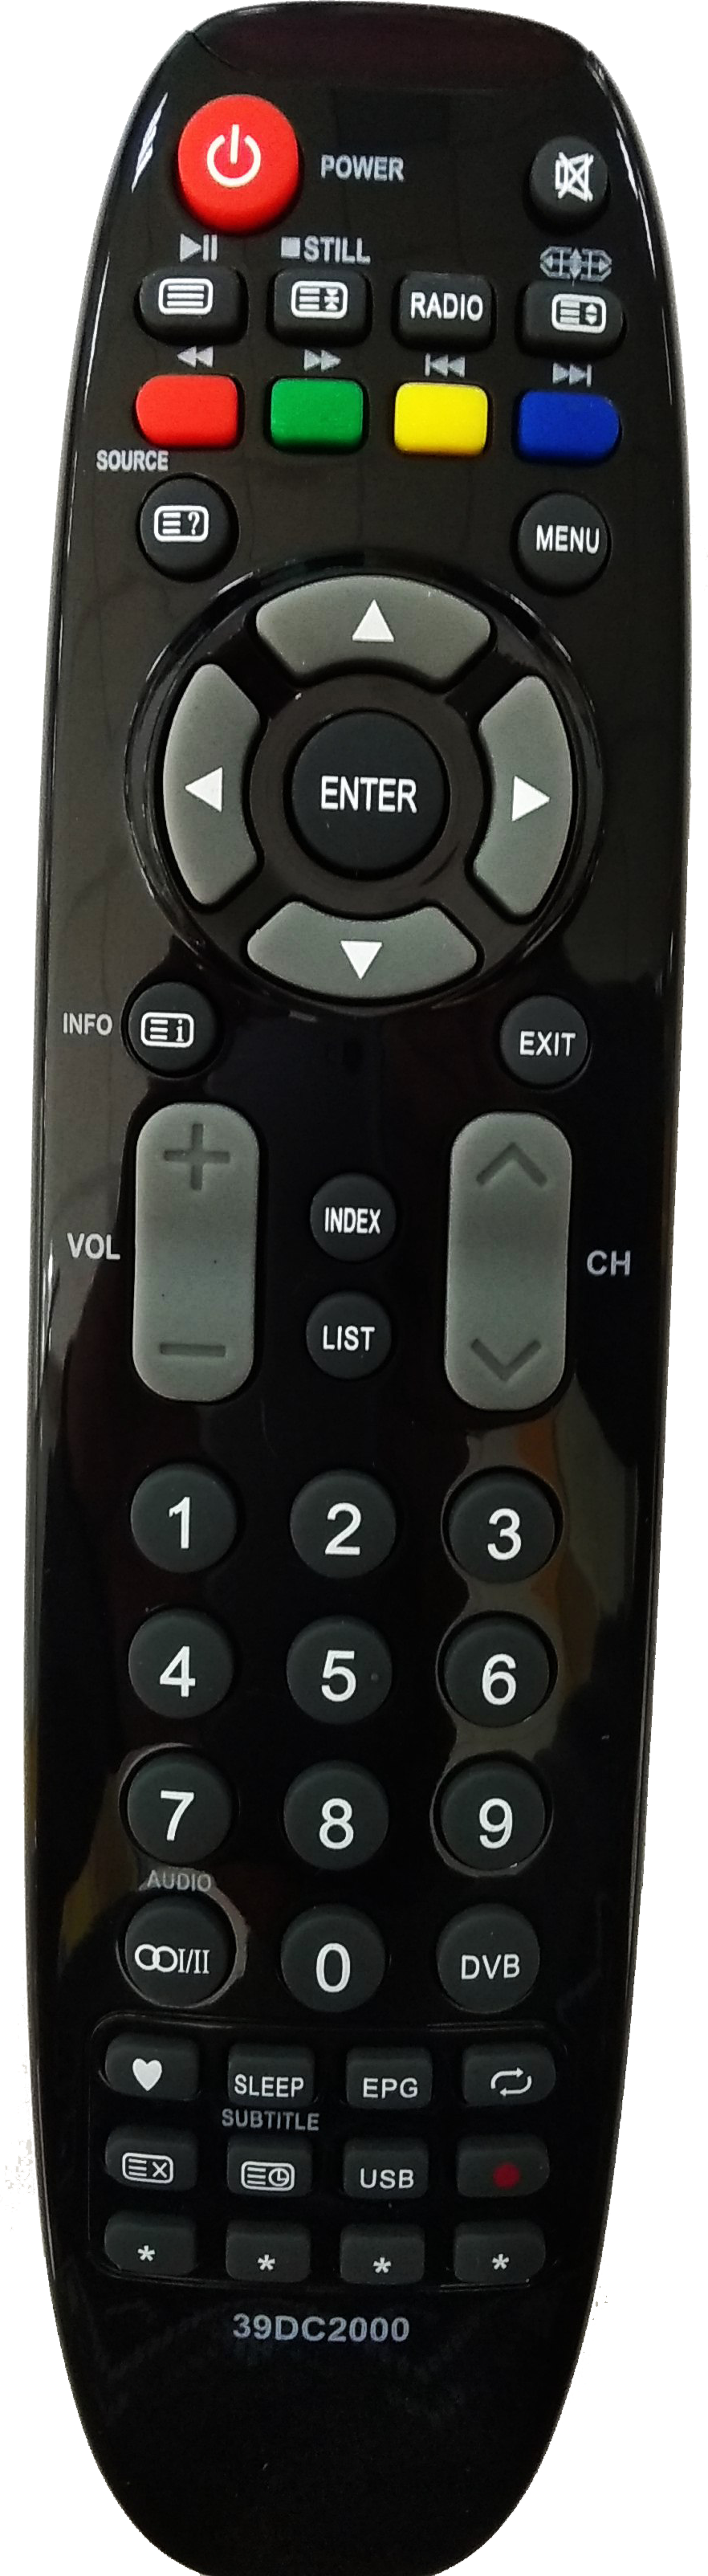 Dexp пульт телефон андроид. DNS TV m39dm8 пульт. Пульт для ДНС m39dm8. Пульт дексп телевизор. Пульт для смарт ТВ дексп.